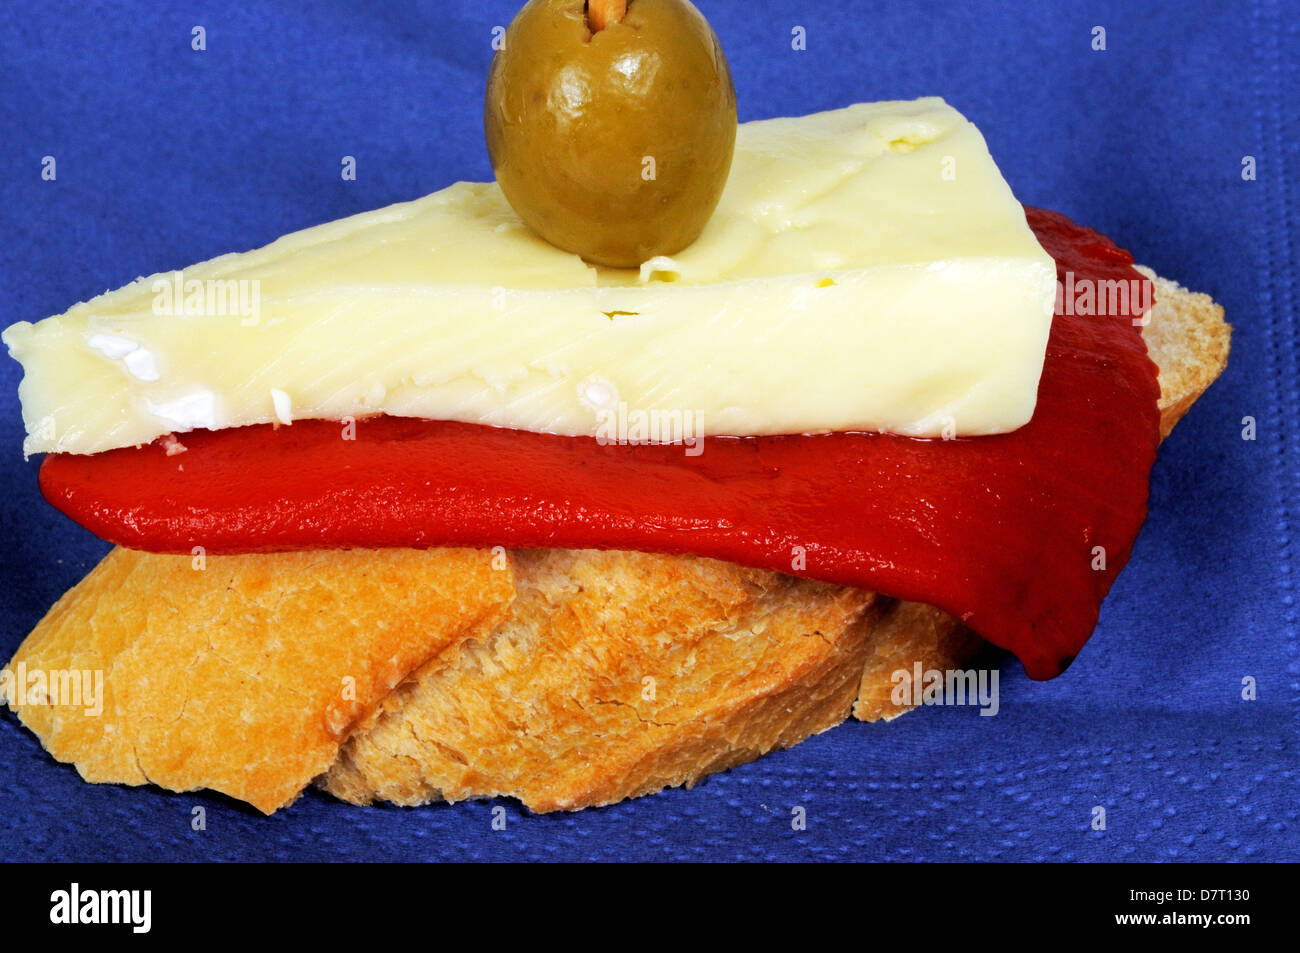 Paprika und Käse Tapa garniert mit grünen Oliven und serviert auf knusprigem Brot, Andalusien, Spanien, Westeuropa. Stockfoto